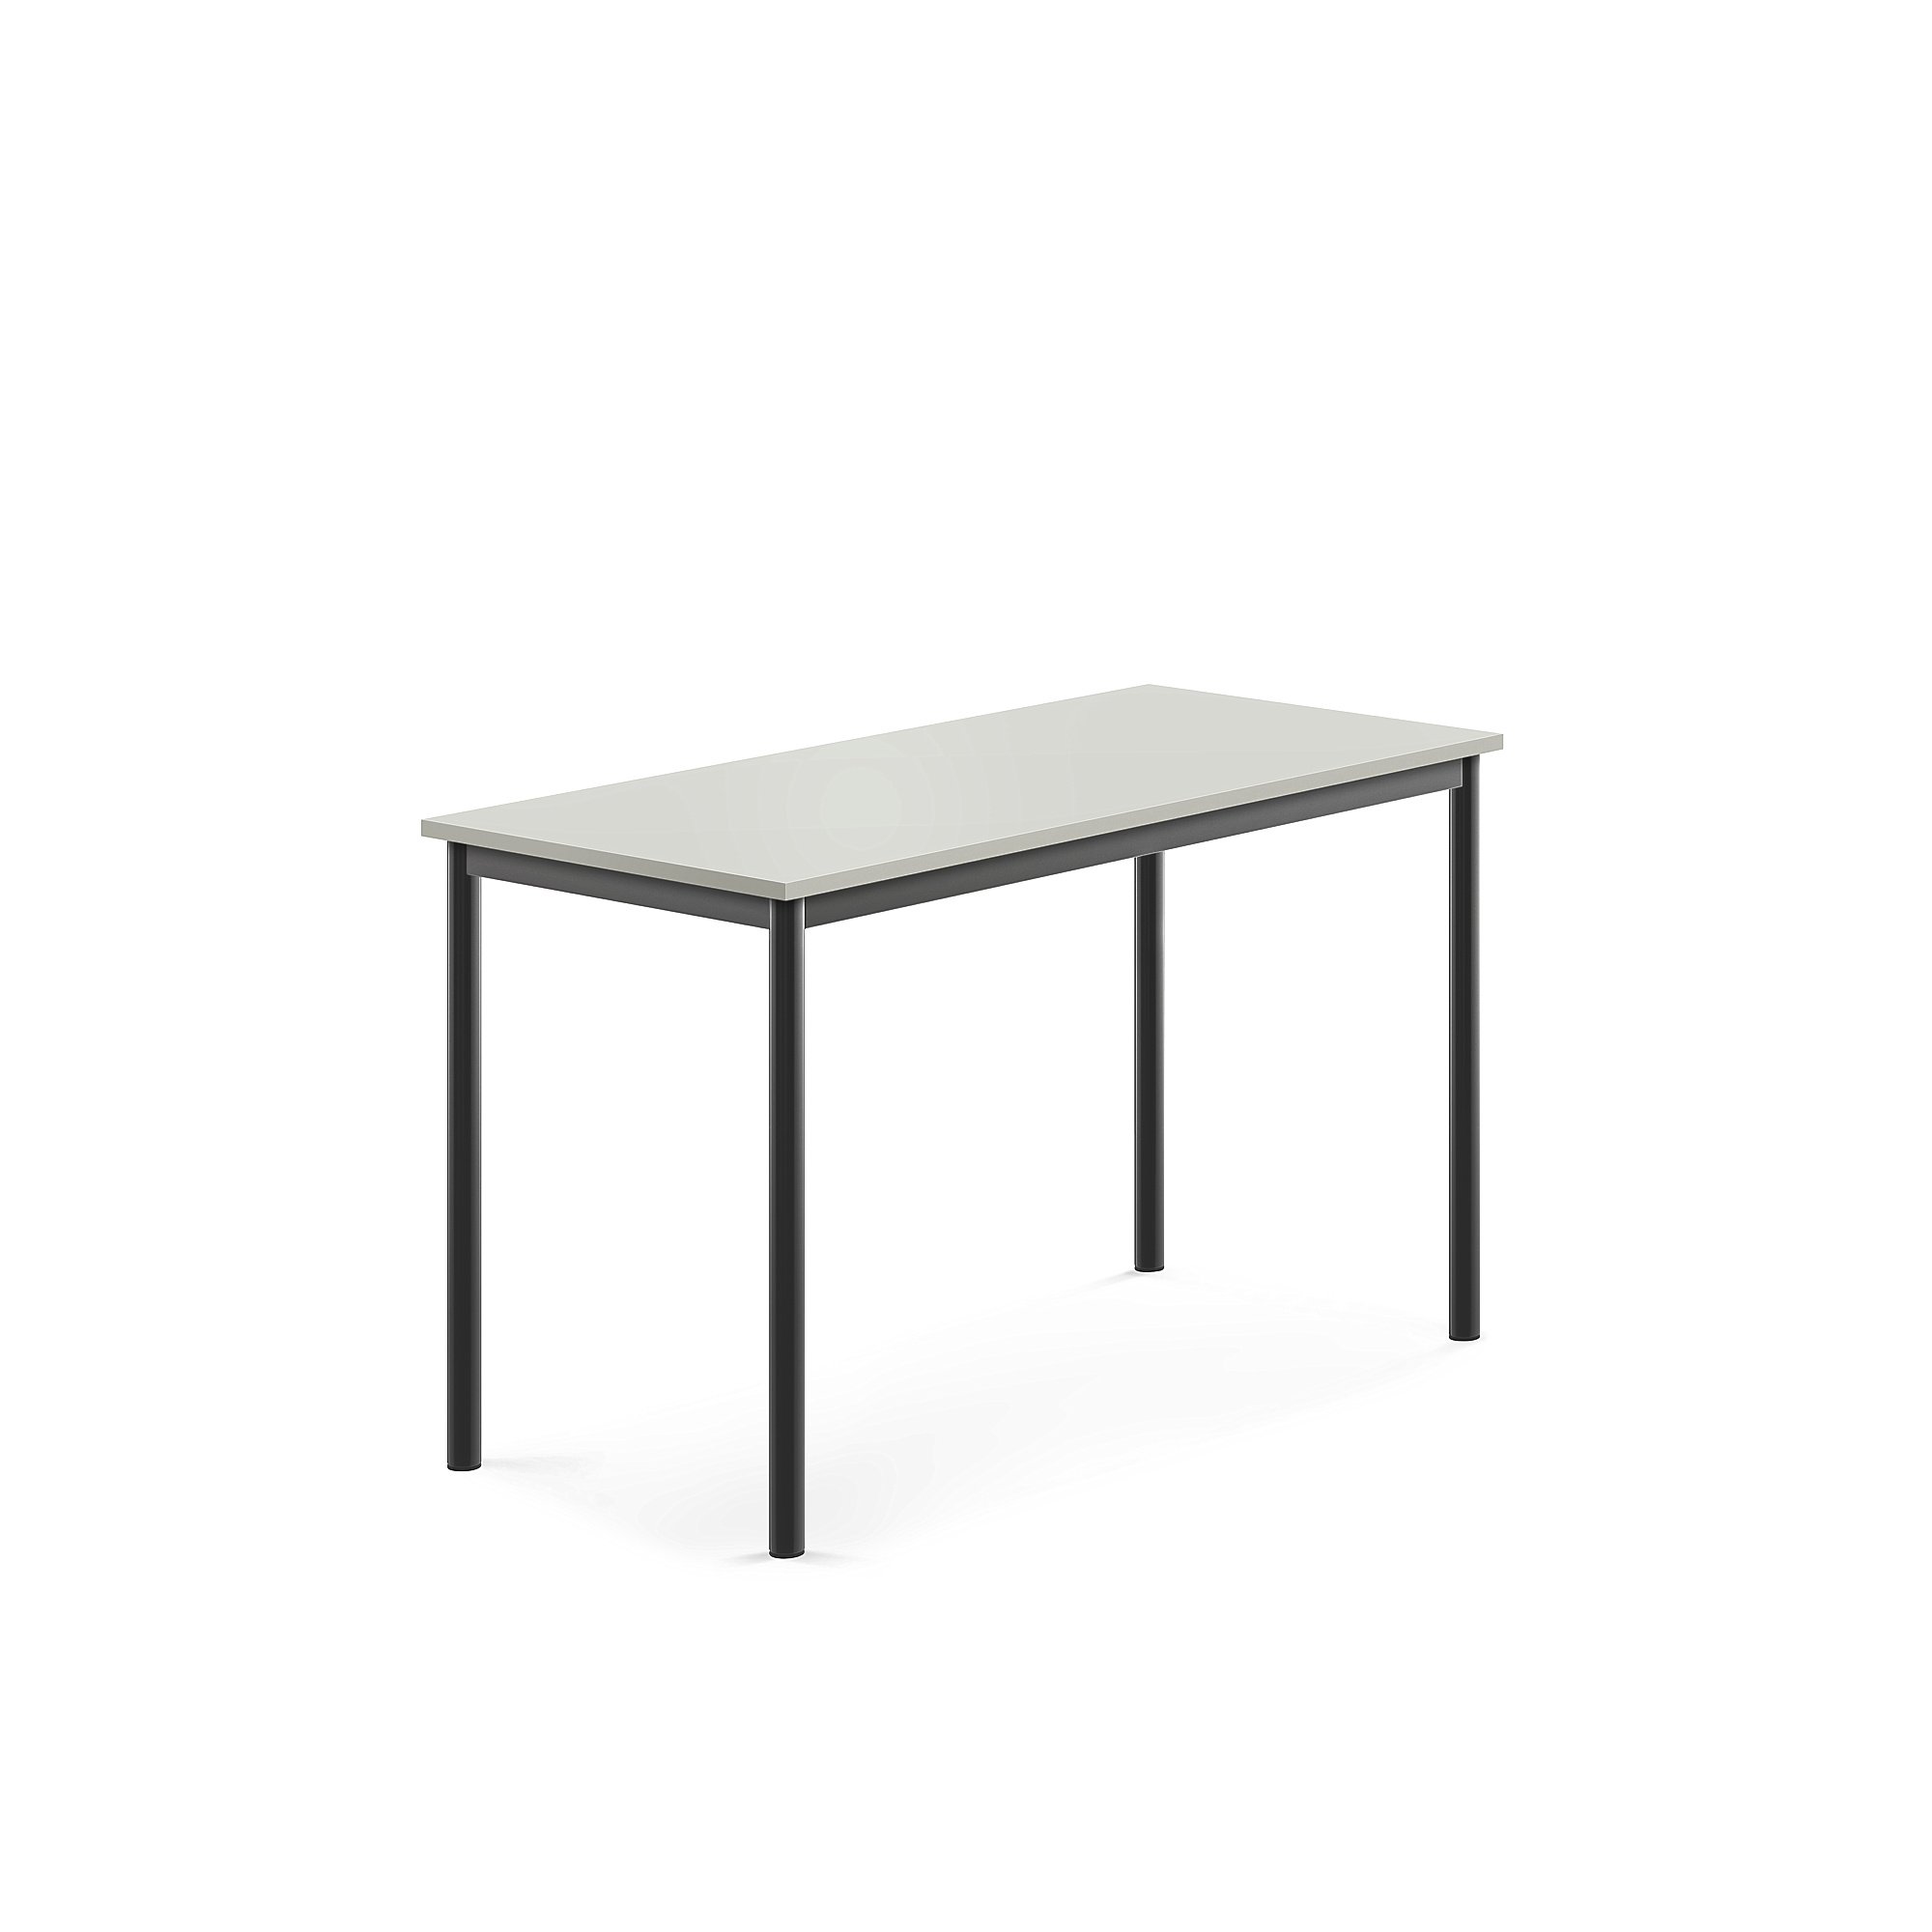 Stůl SONITUS, 1200x600x720 mm, antracitově šedé nohy, HPL deska tlumící hluk, šedá